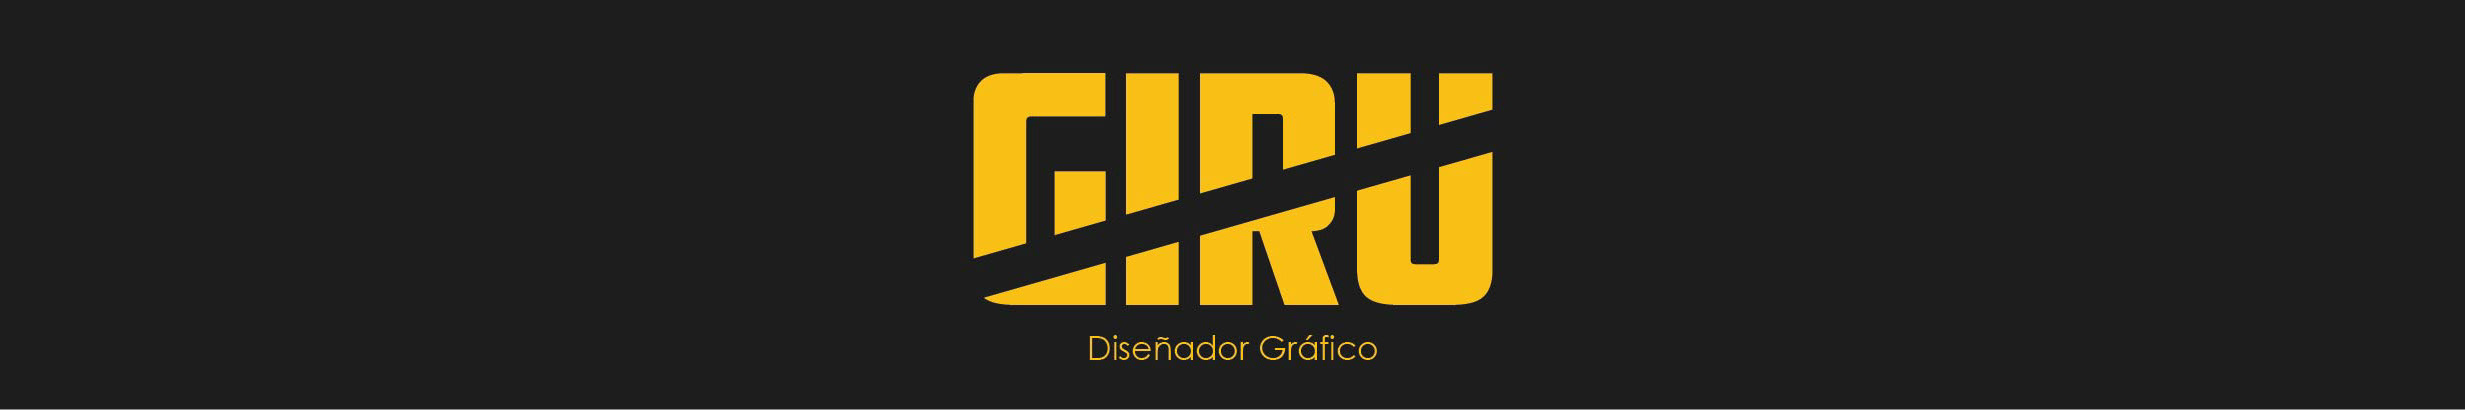 Carlos Eduardo Giraud Carvajal's profile banner